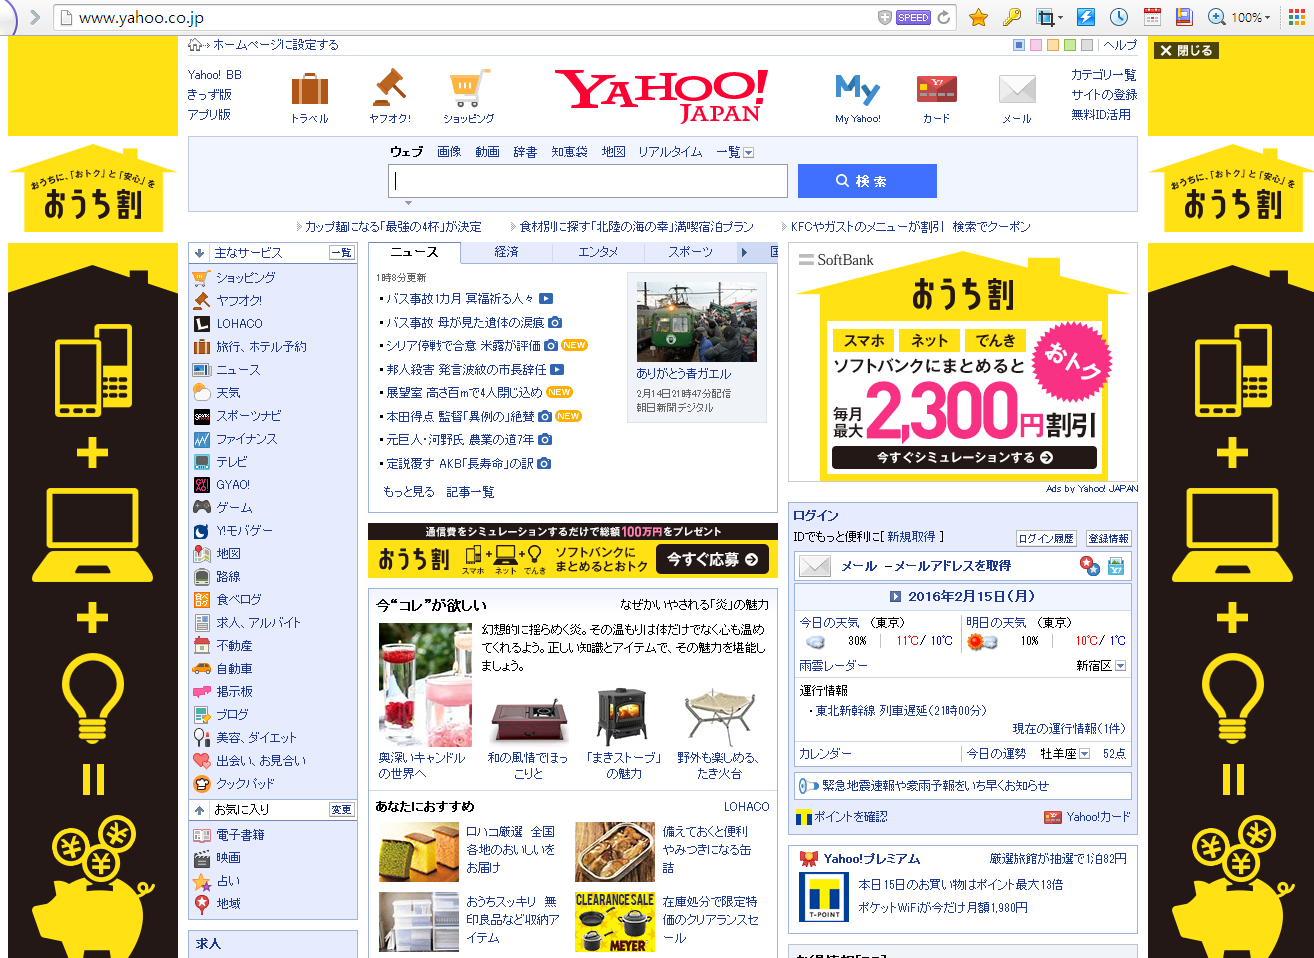 일본구글 주소로 현지 일본에서 사용하는 구글접속방법 안내